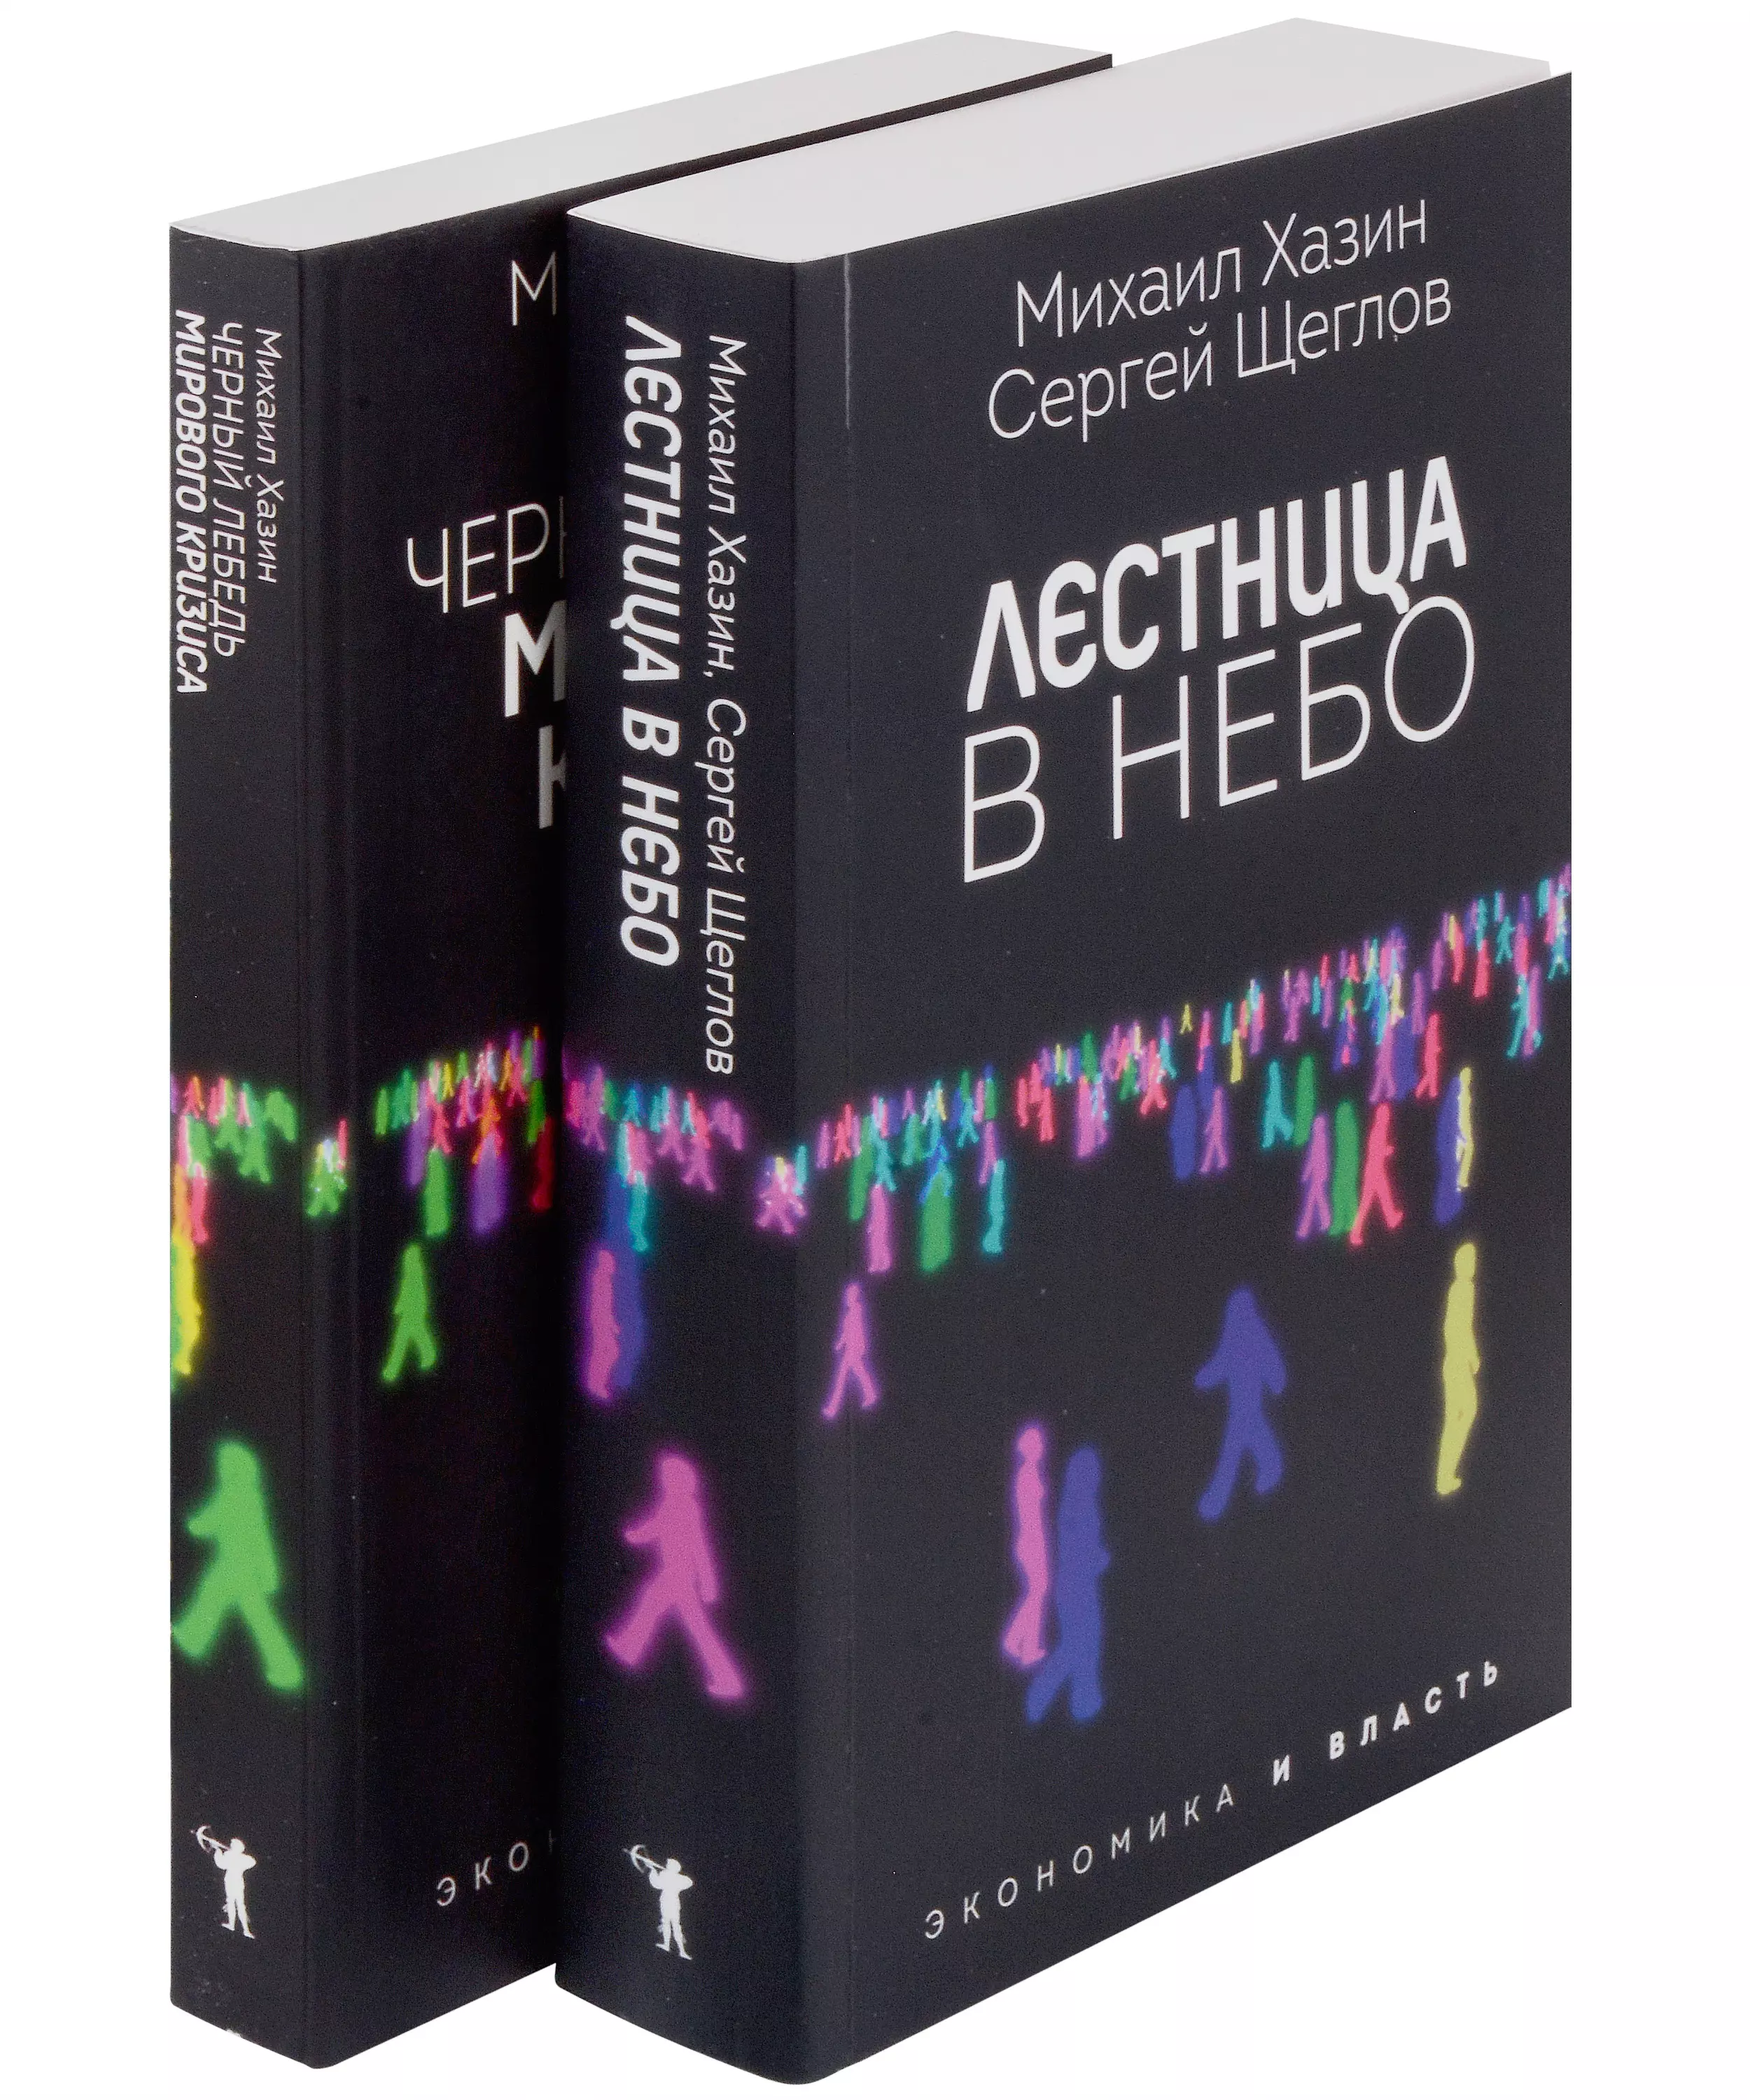 Хазин Михаил Леонидович - Лестница в небо и Черный лебедь (комплект из 2-х книг)